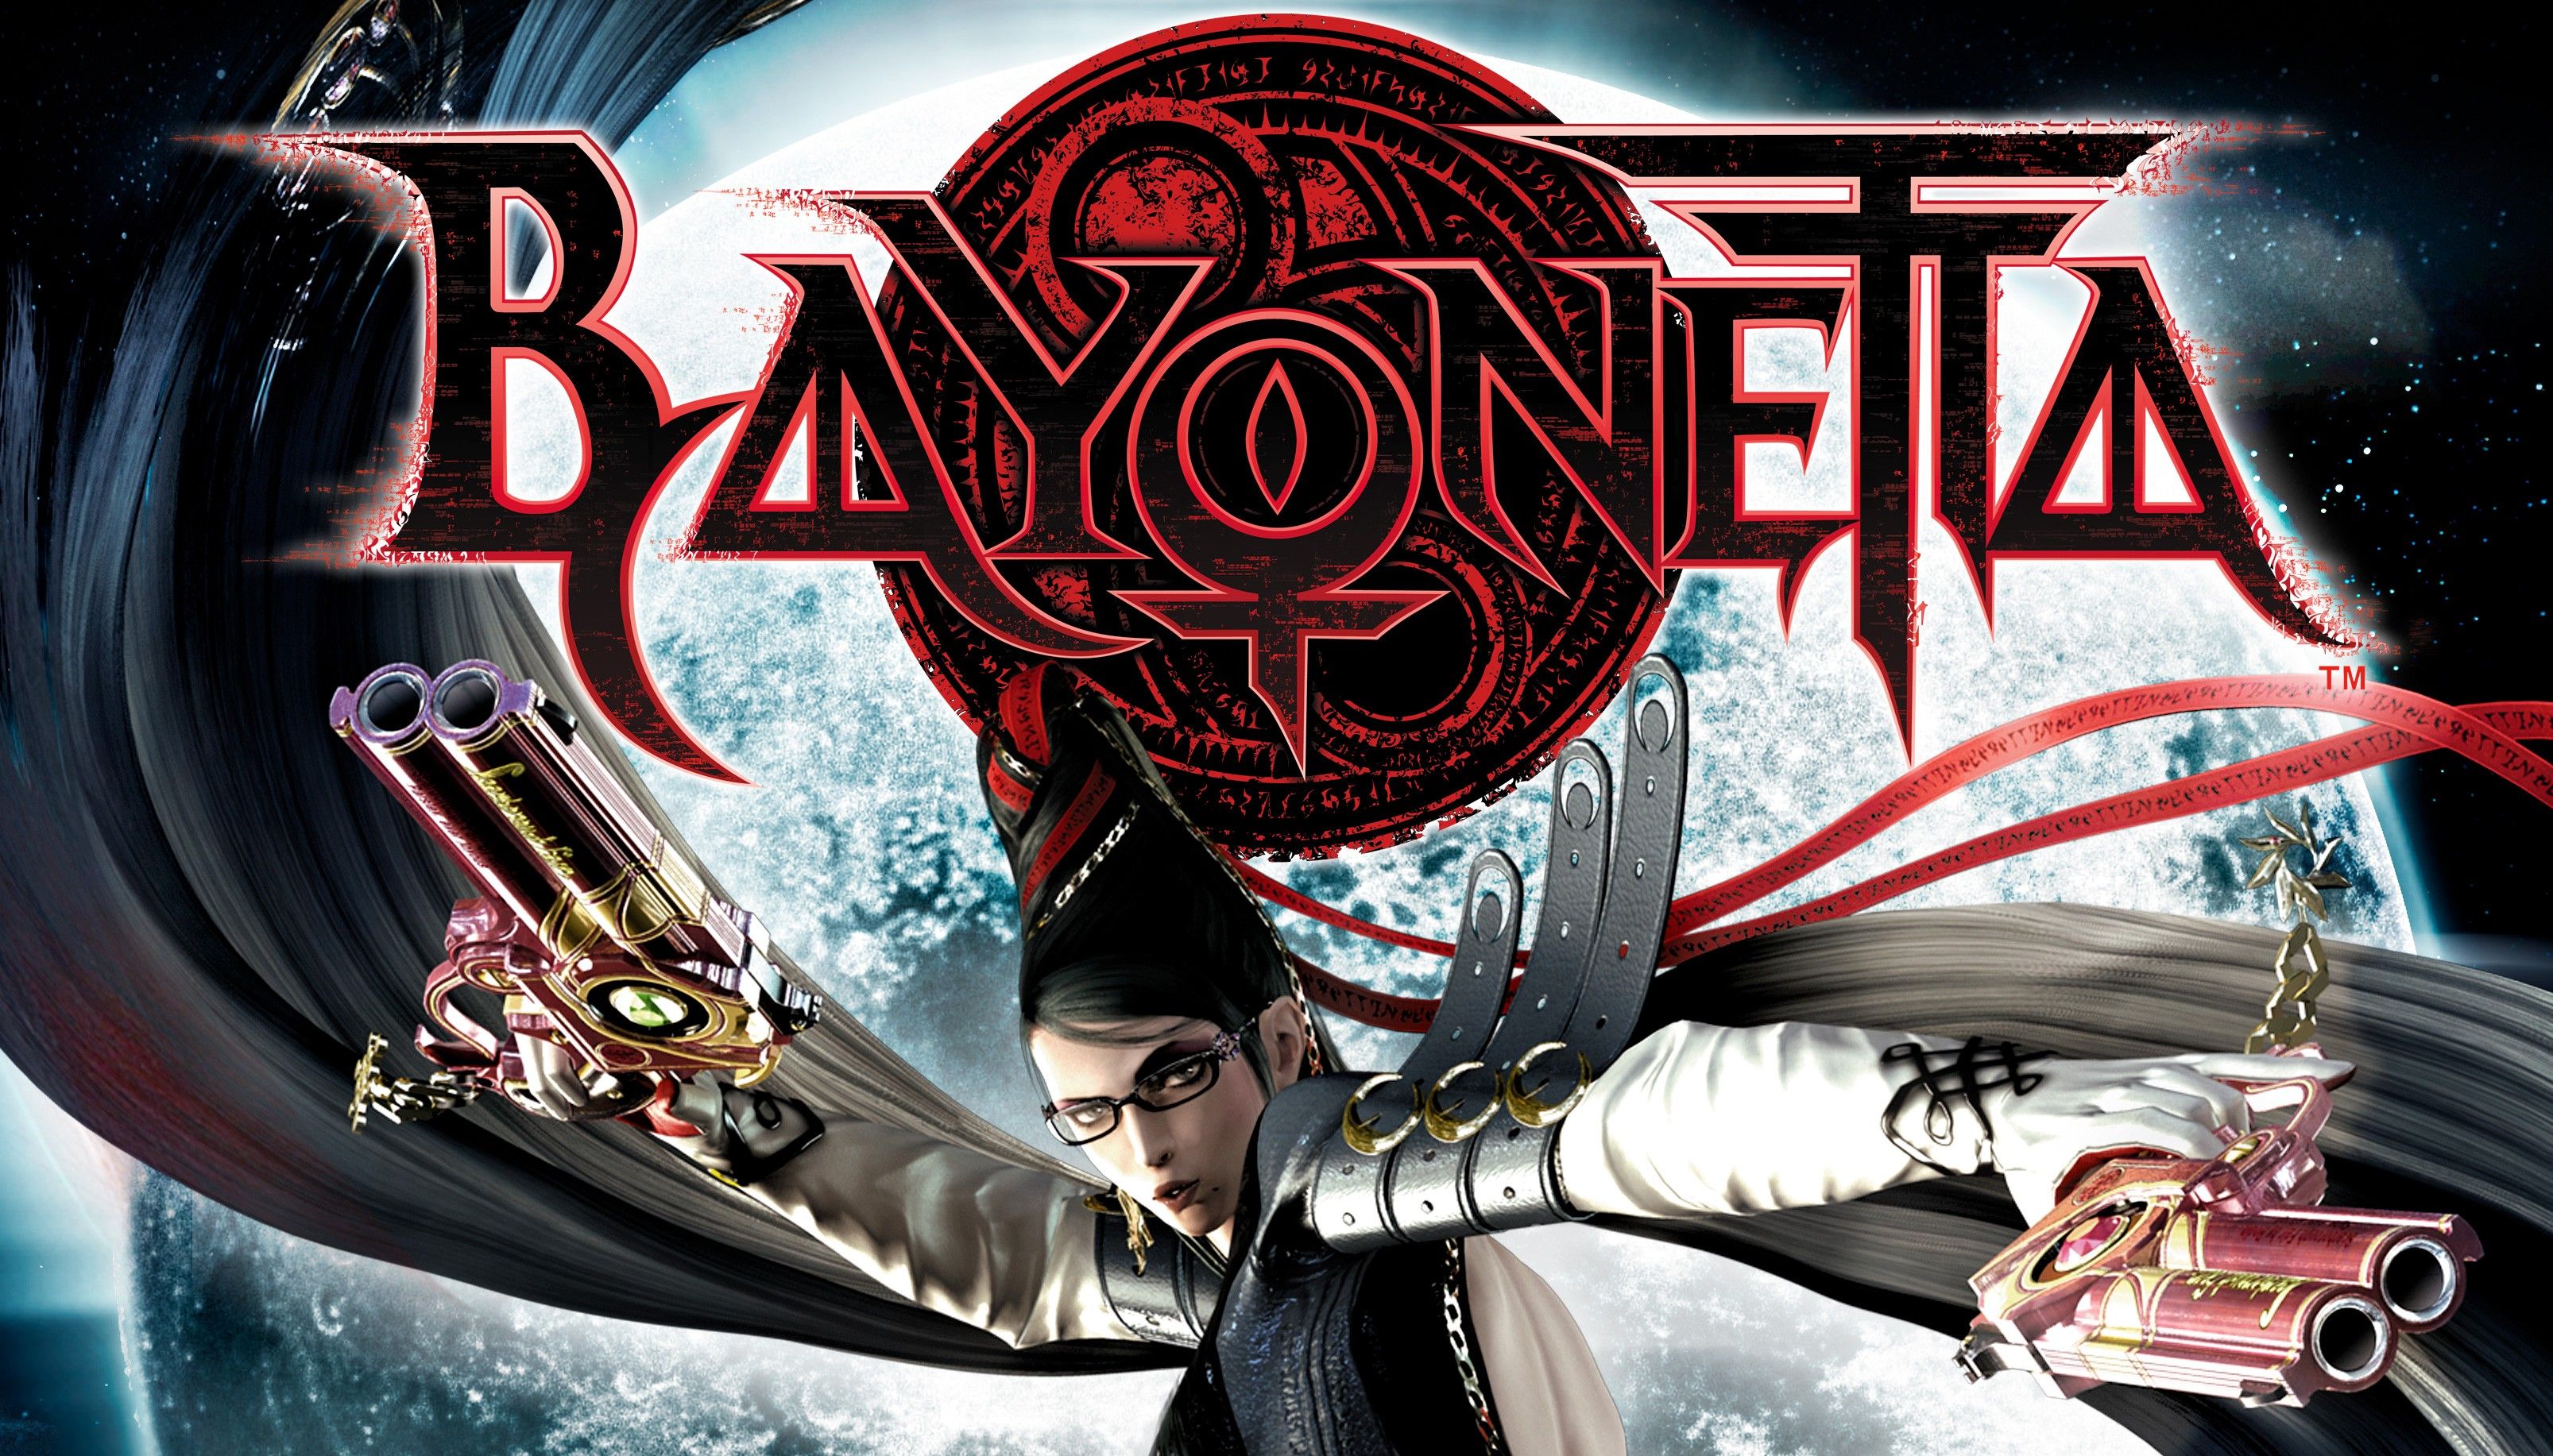 Bayonetta chega ao PC rodando em 60 FPS e com suporte para 4K; Veja o  trailer